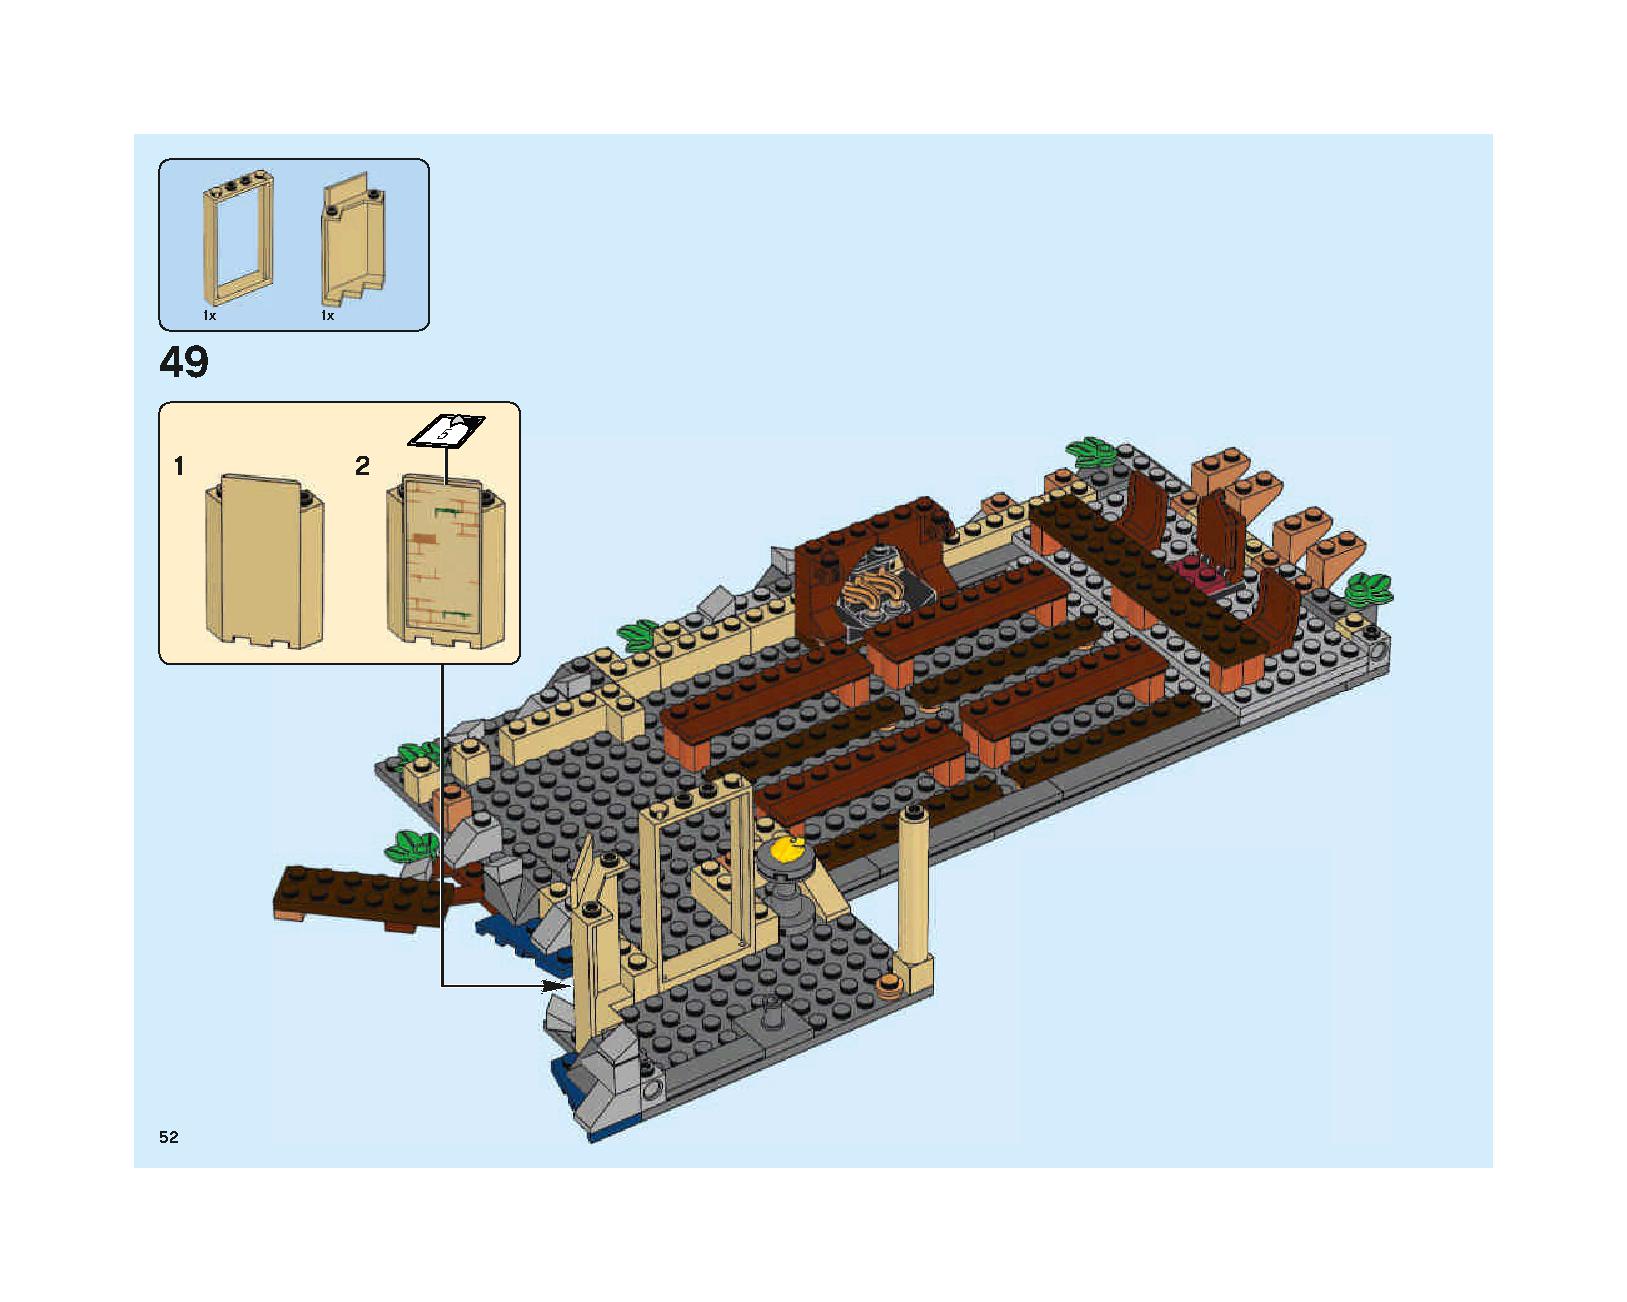 ホグワーツの大広間 75954 レゴの商品情報 レゴの説明書・組立方法 52 page